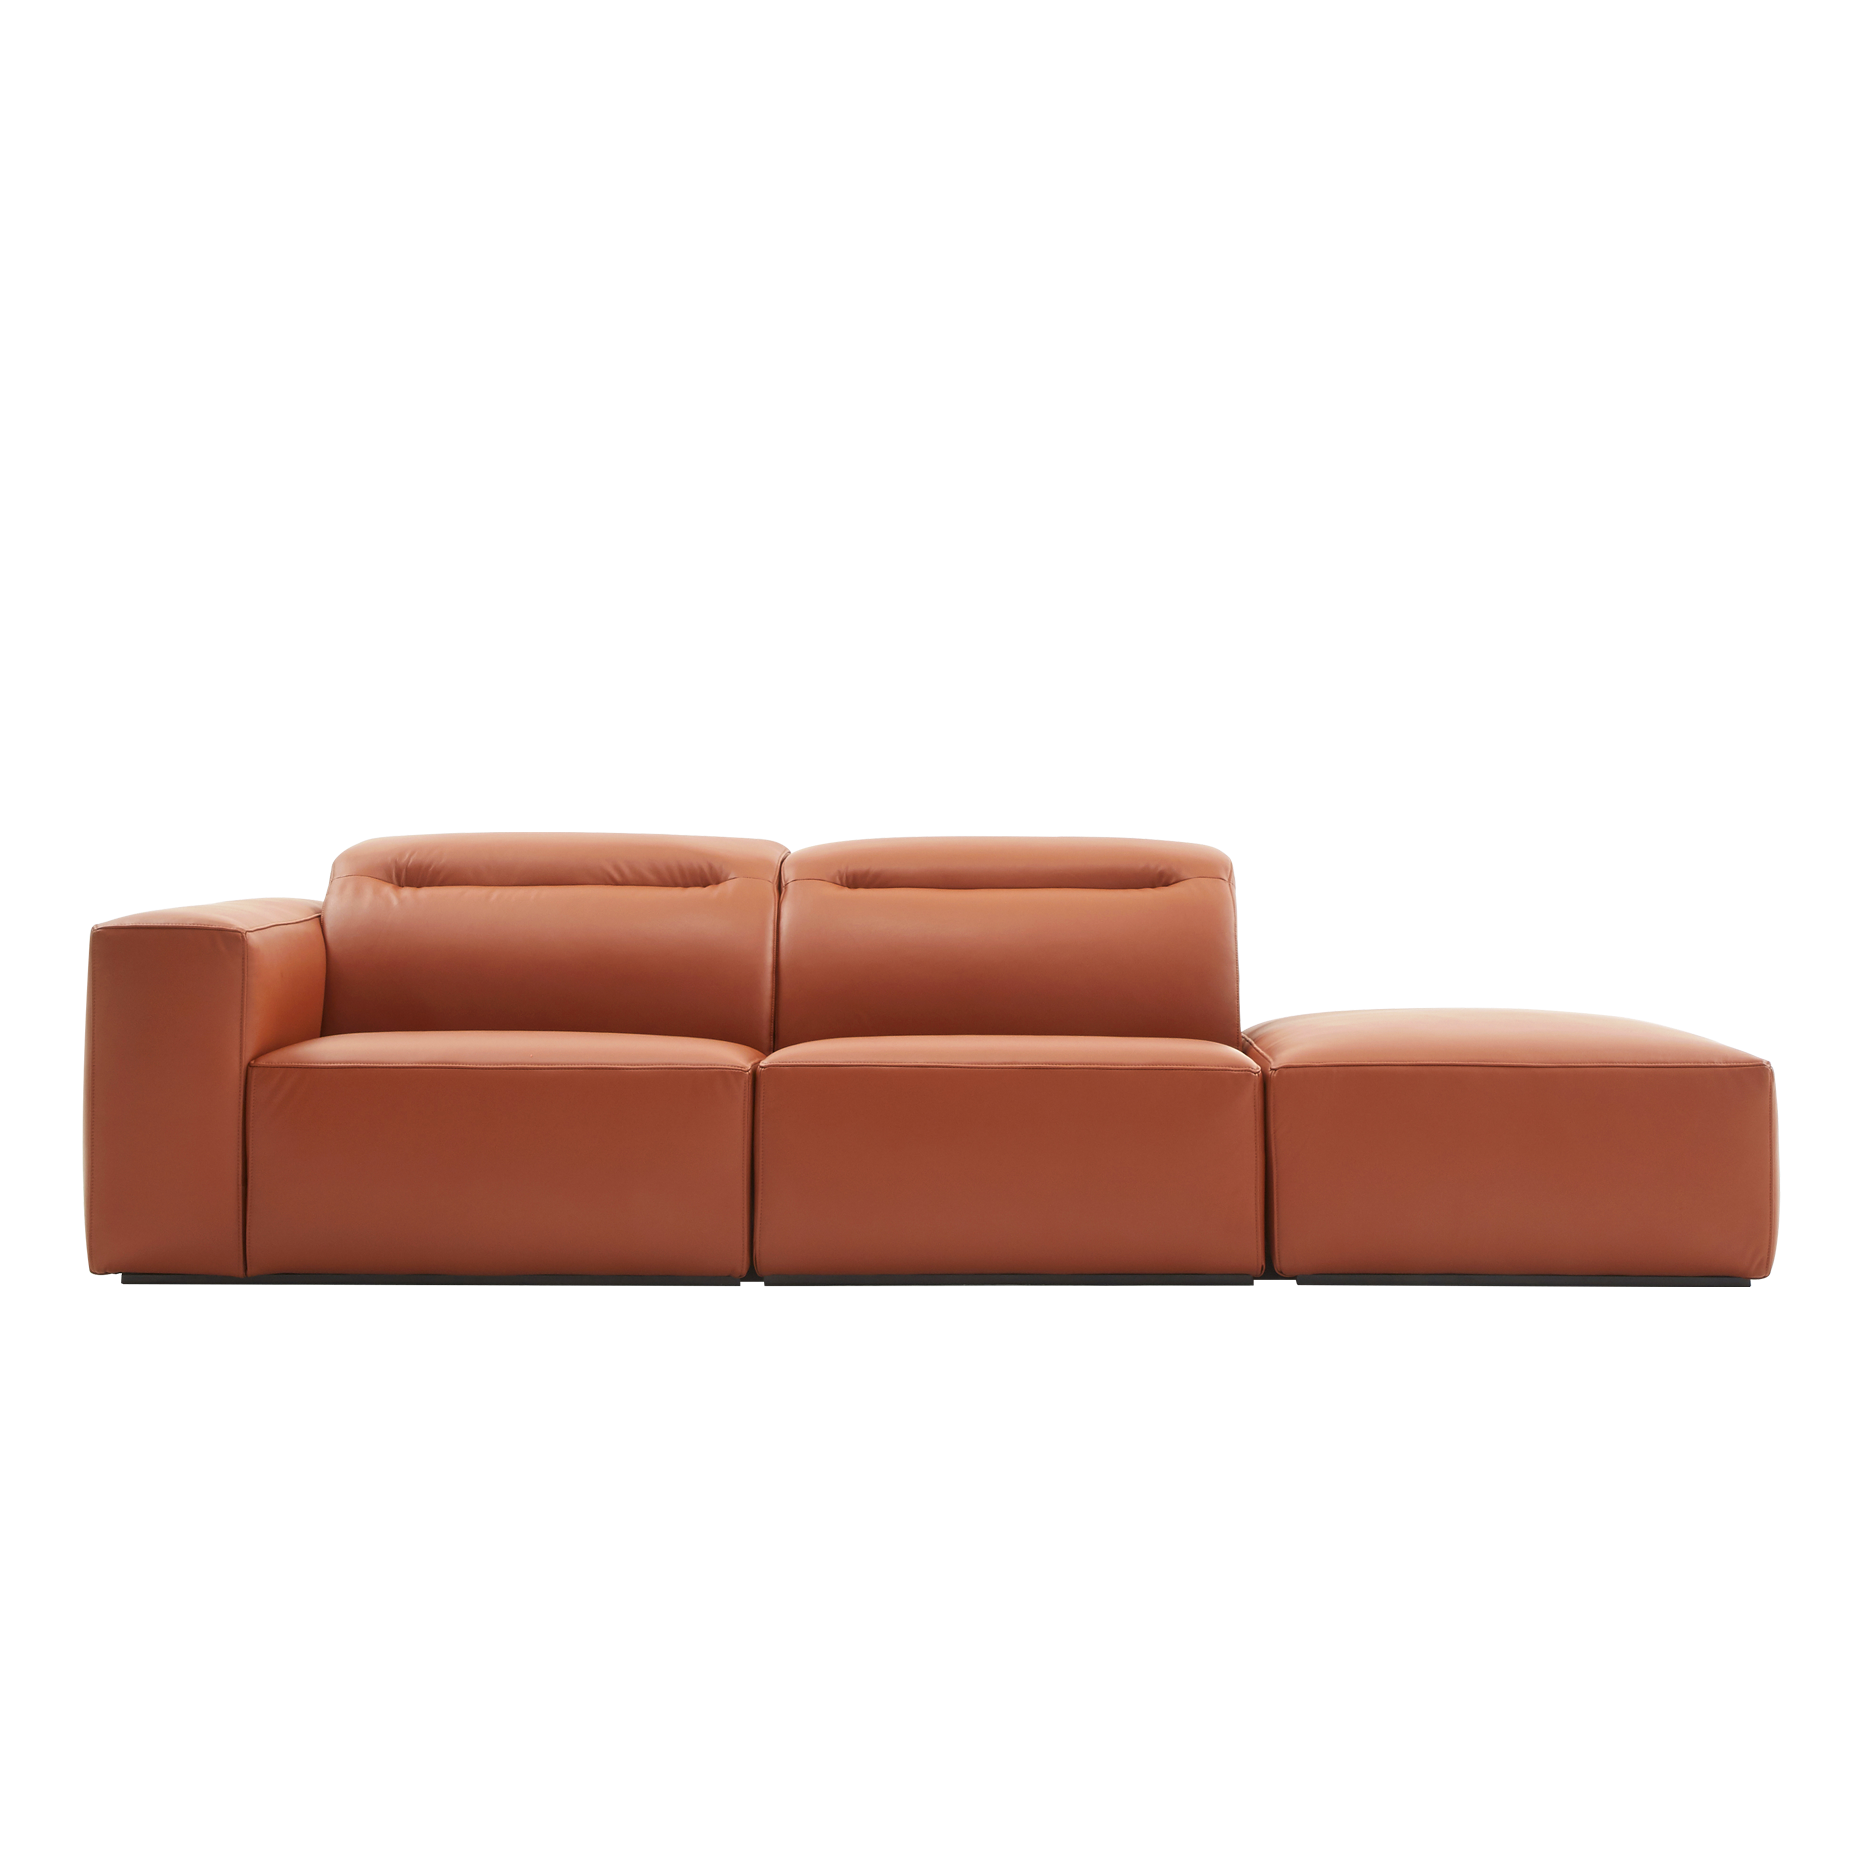 (주)도이치[4주 주문제작]                DOICH ®    PEN1 modular sofa 도이치 펜1 모듈  2.5인 소파+ 스툴  /(올가죽 사양/ 7개 가죽컬렉션 선택)